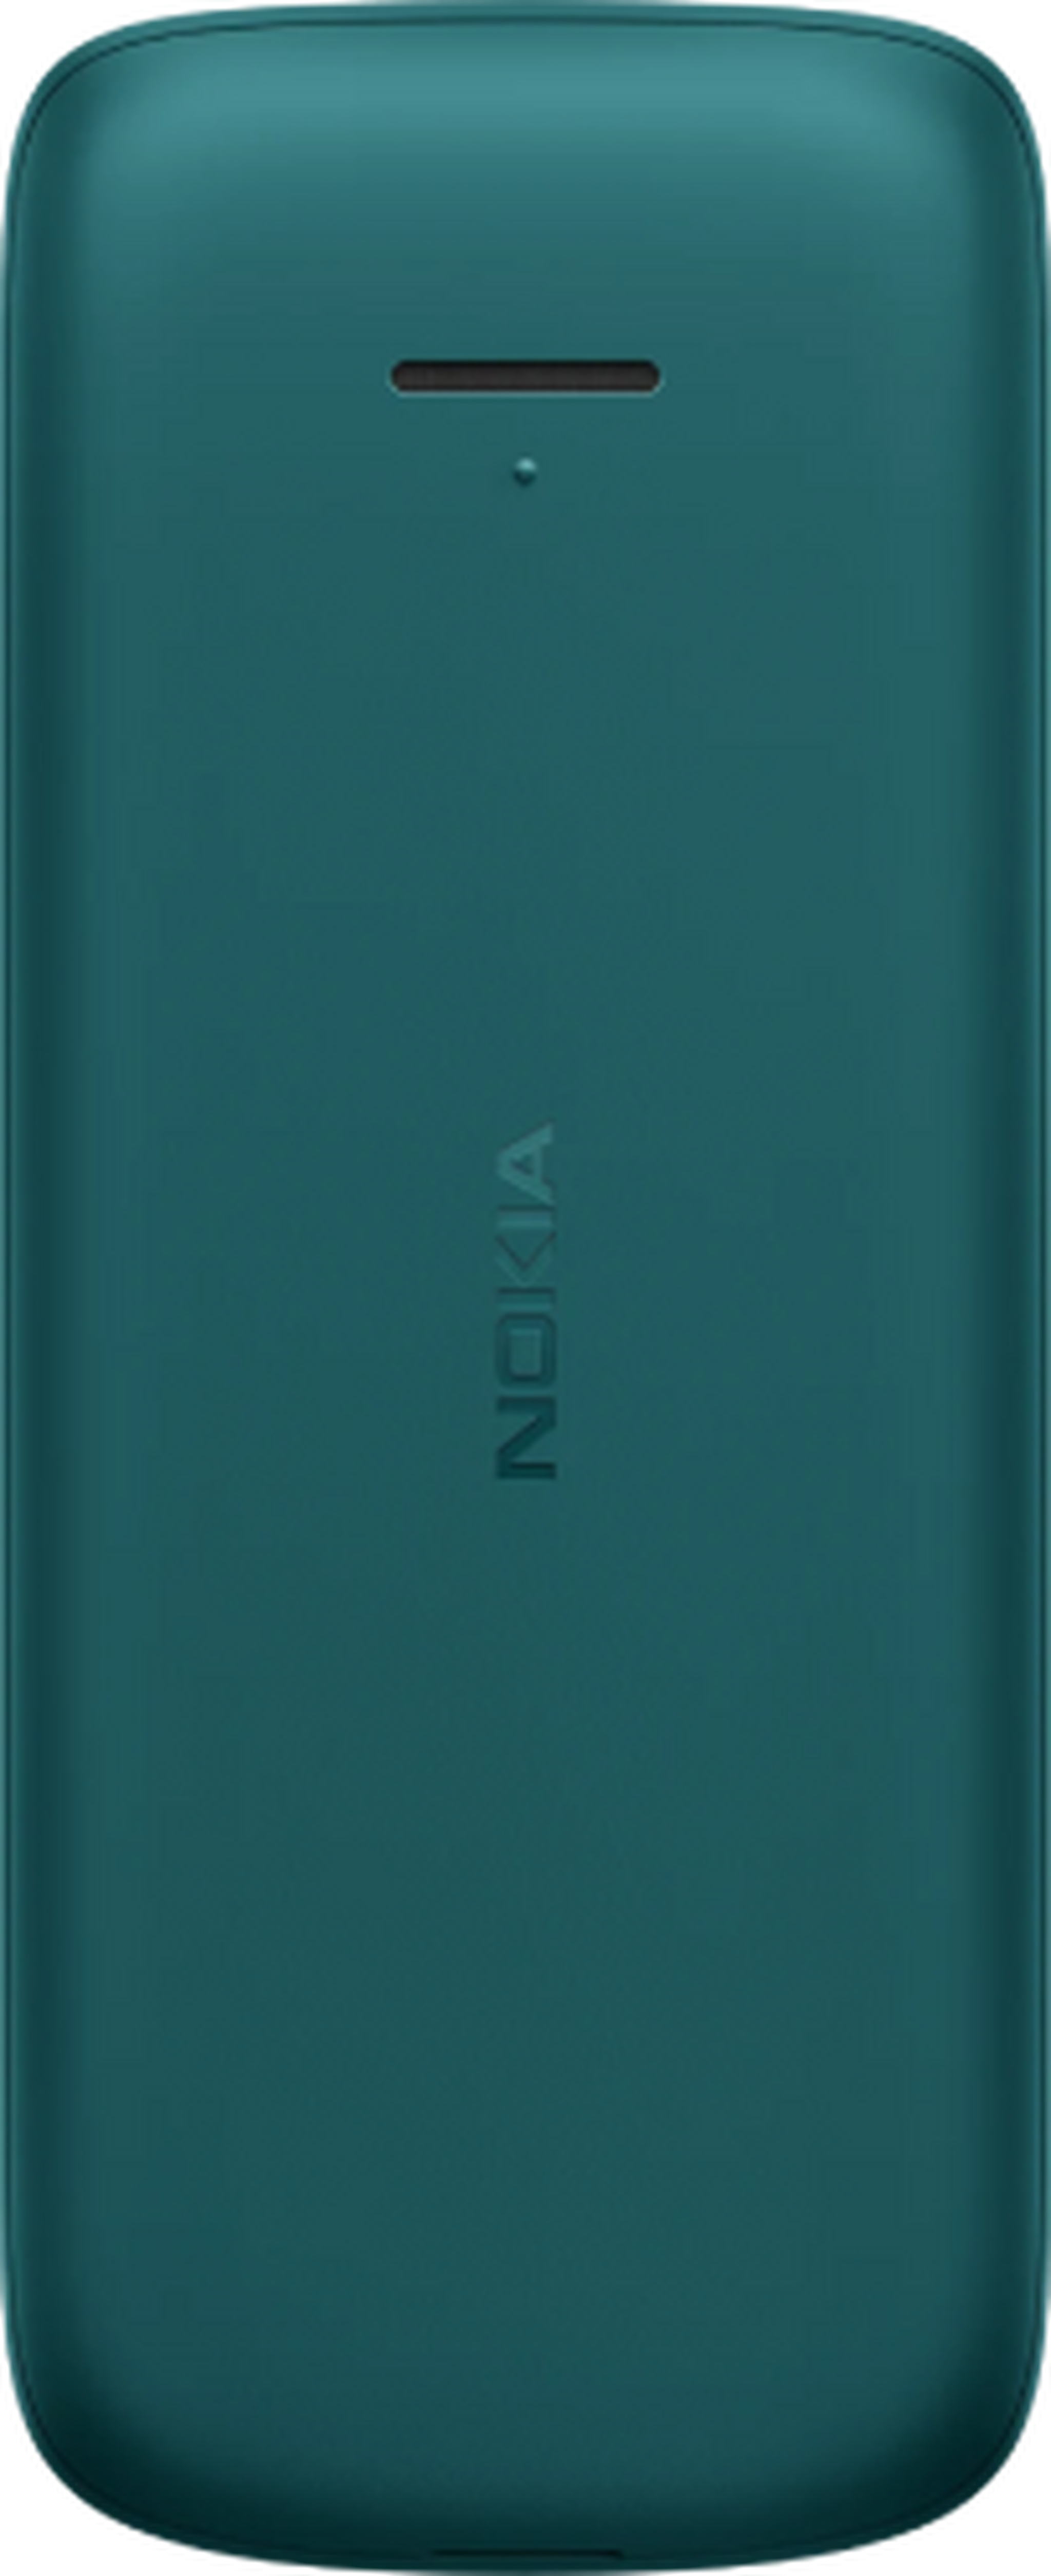 Nokia 215 128MB Phone - Cyan